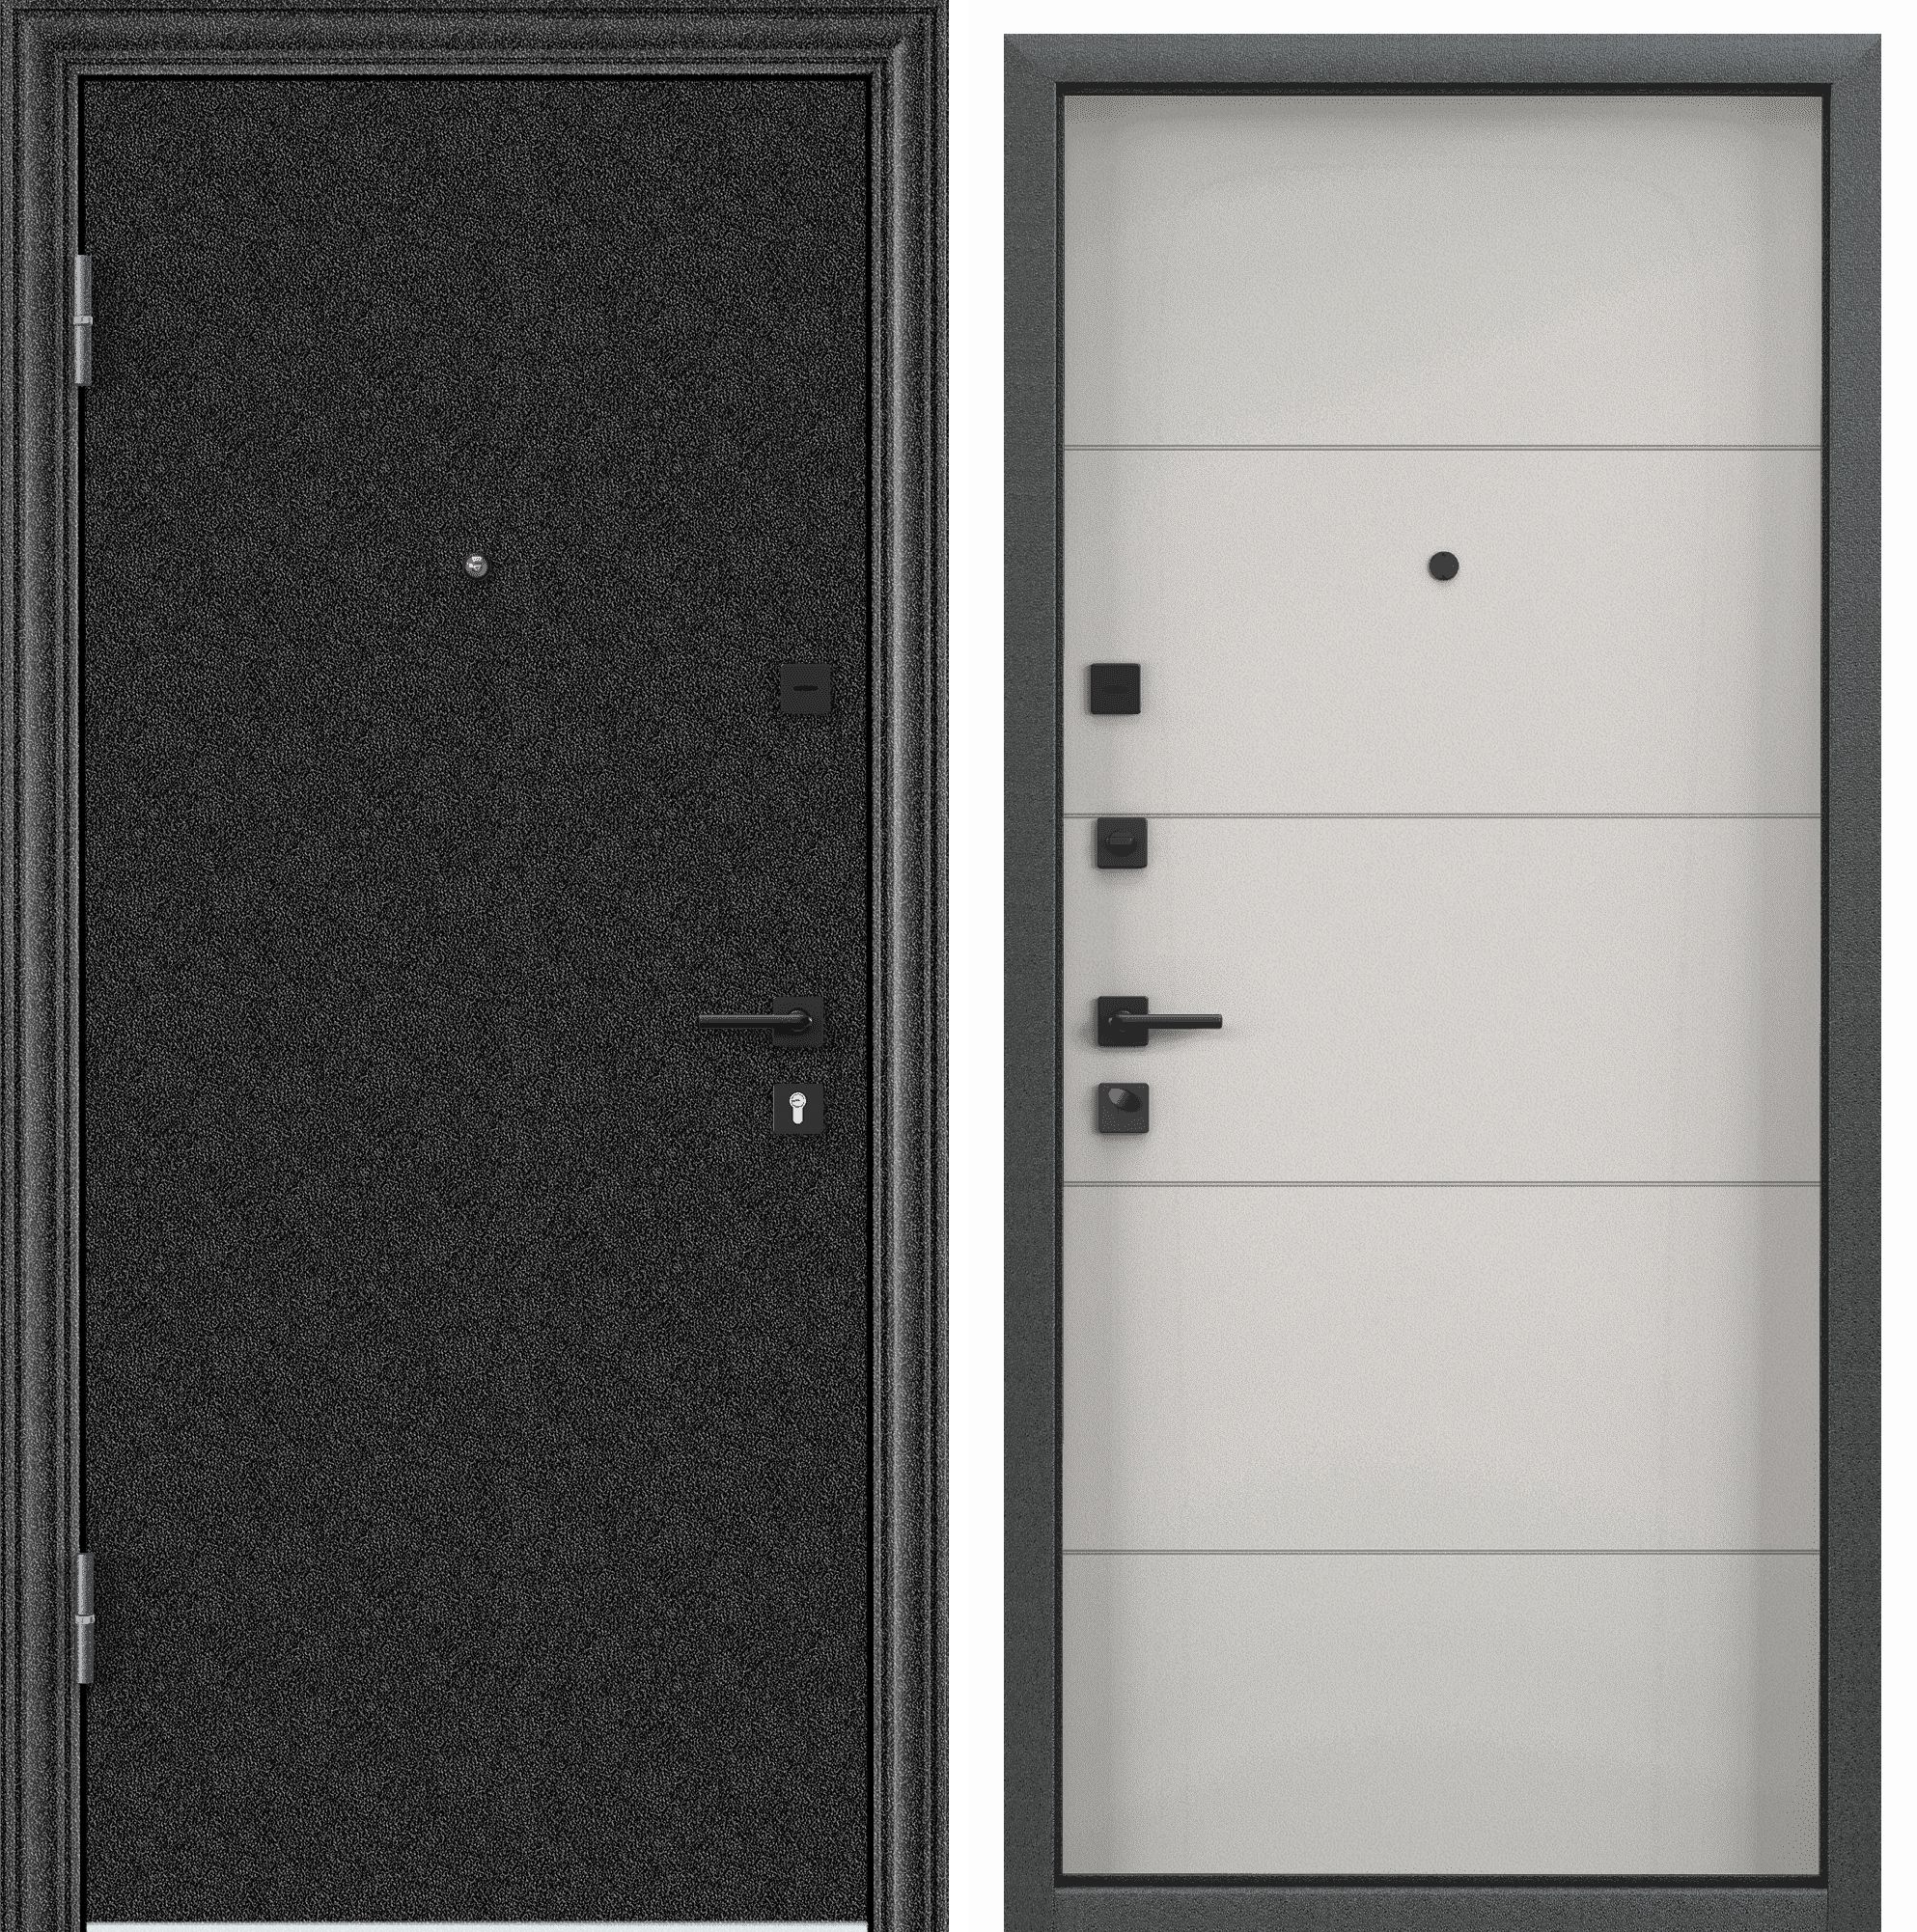 Дверь входная для квартиры металлическая Torex Flat-M 860х2050, левый, черный/белый дверь входная buldoors ютта левая букле шоколад ларче бьянко с зеркалом 860х2050 мм